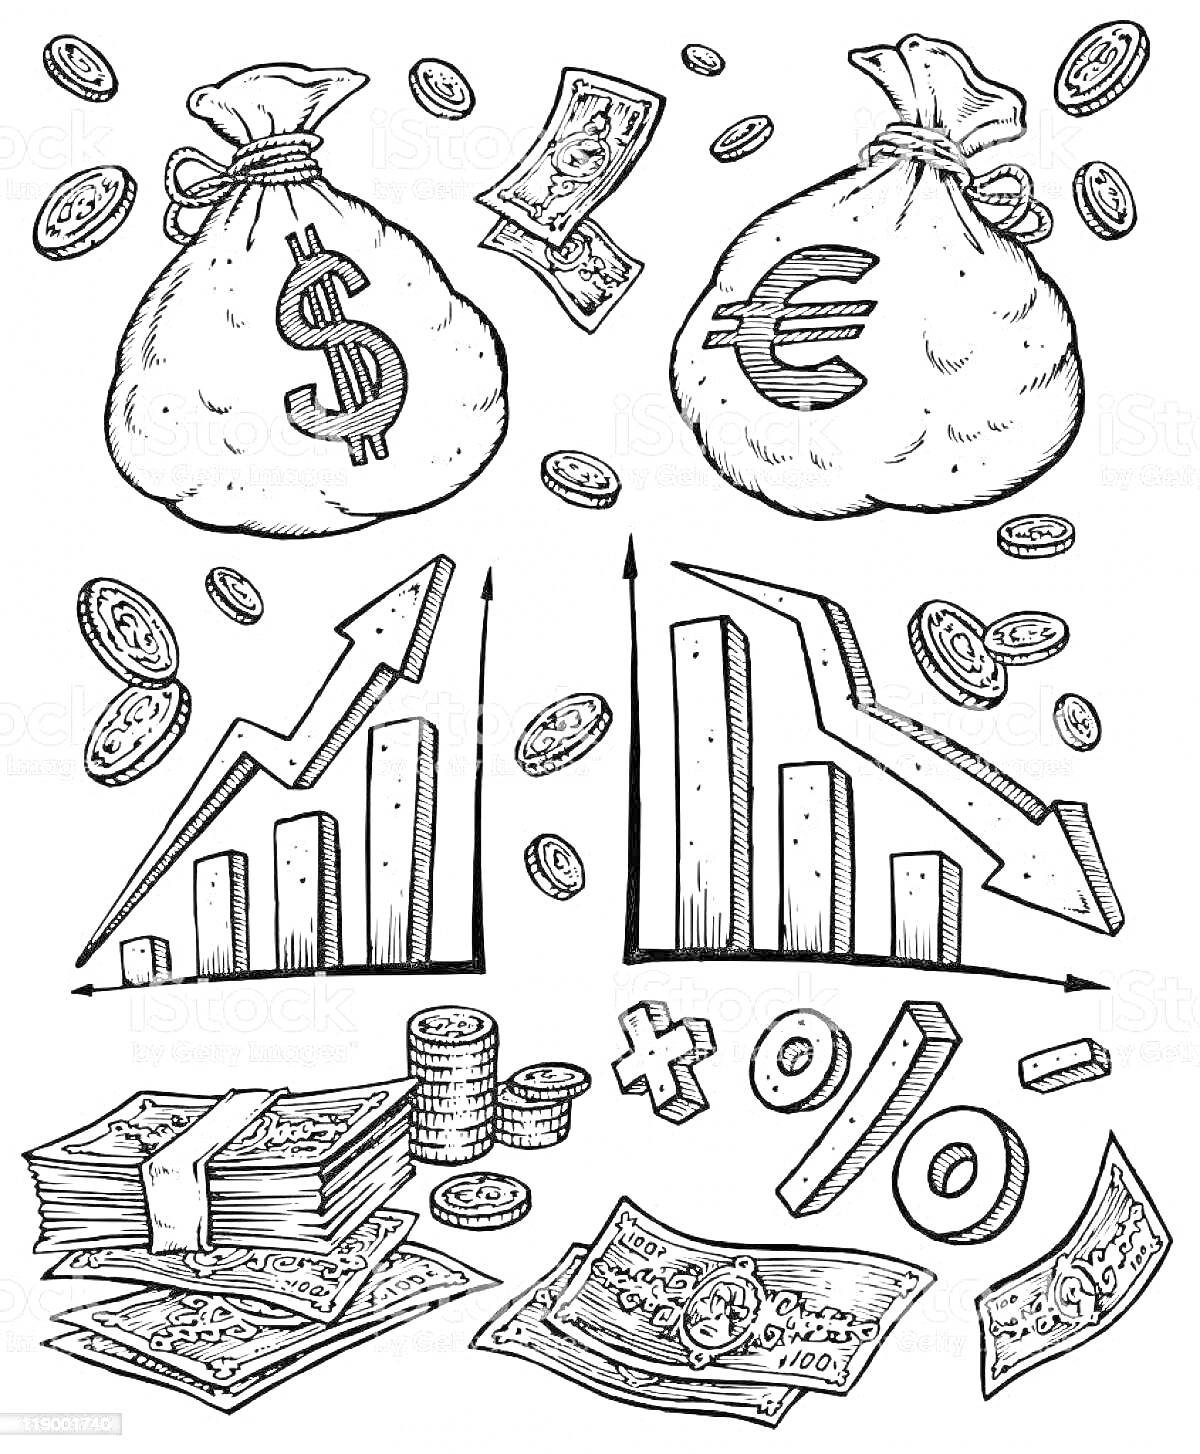 Раскраска Мешки с деньгами (доллары и евро), графики роста и падения, монеты, стопки денег, купюры, математические символы (плюс, минус, процент)